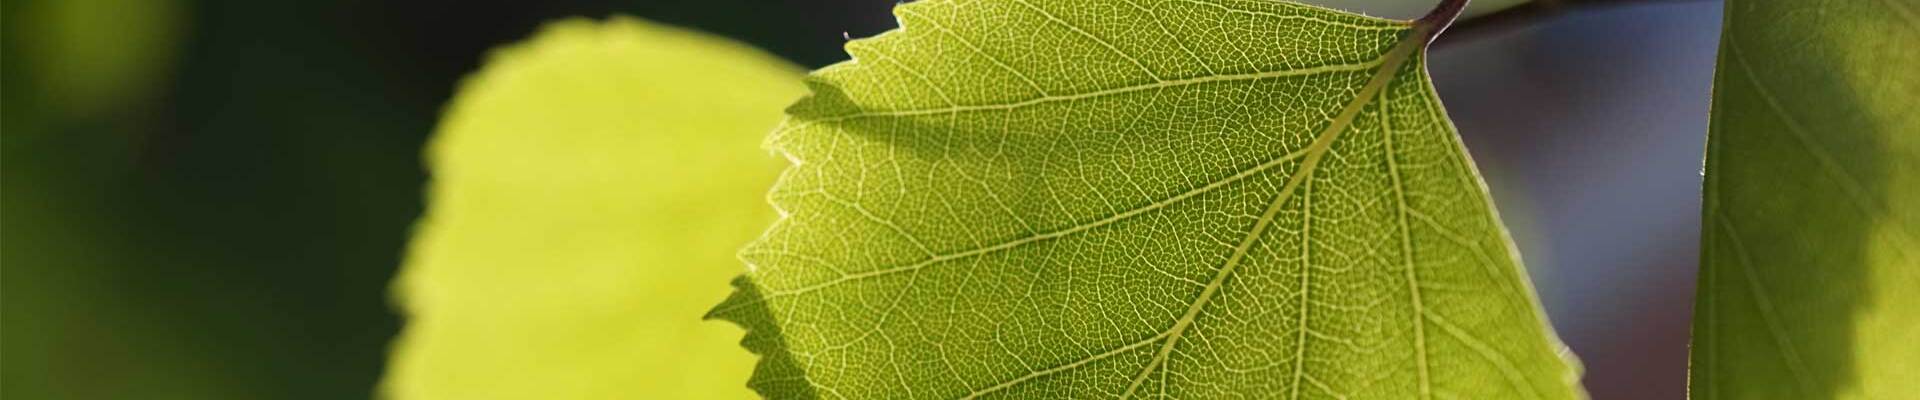 Bild von grünen Blättern, symbolisiert die Naturverbundenheit und den Fokus auf natürliche Inhaltsstoffe von vita7.